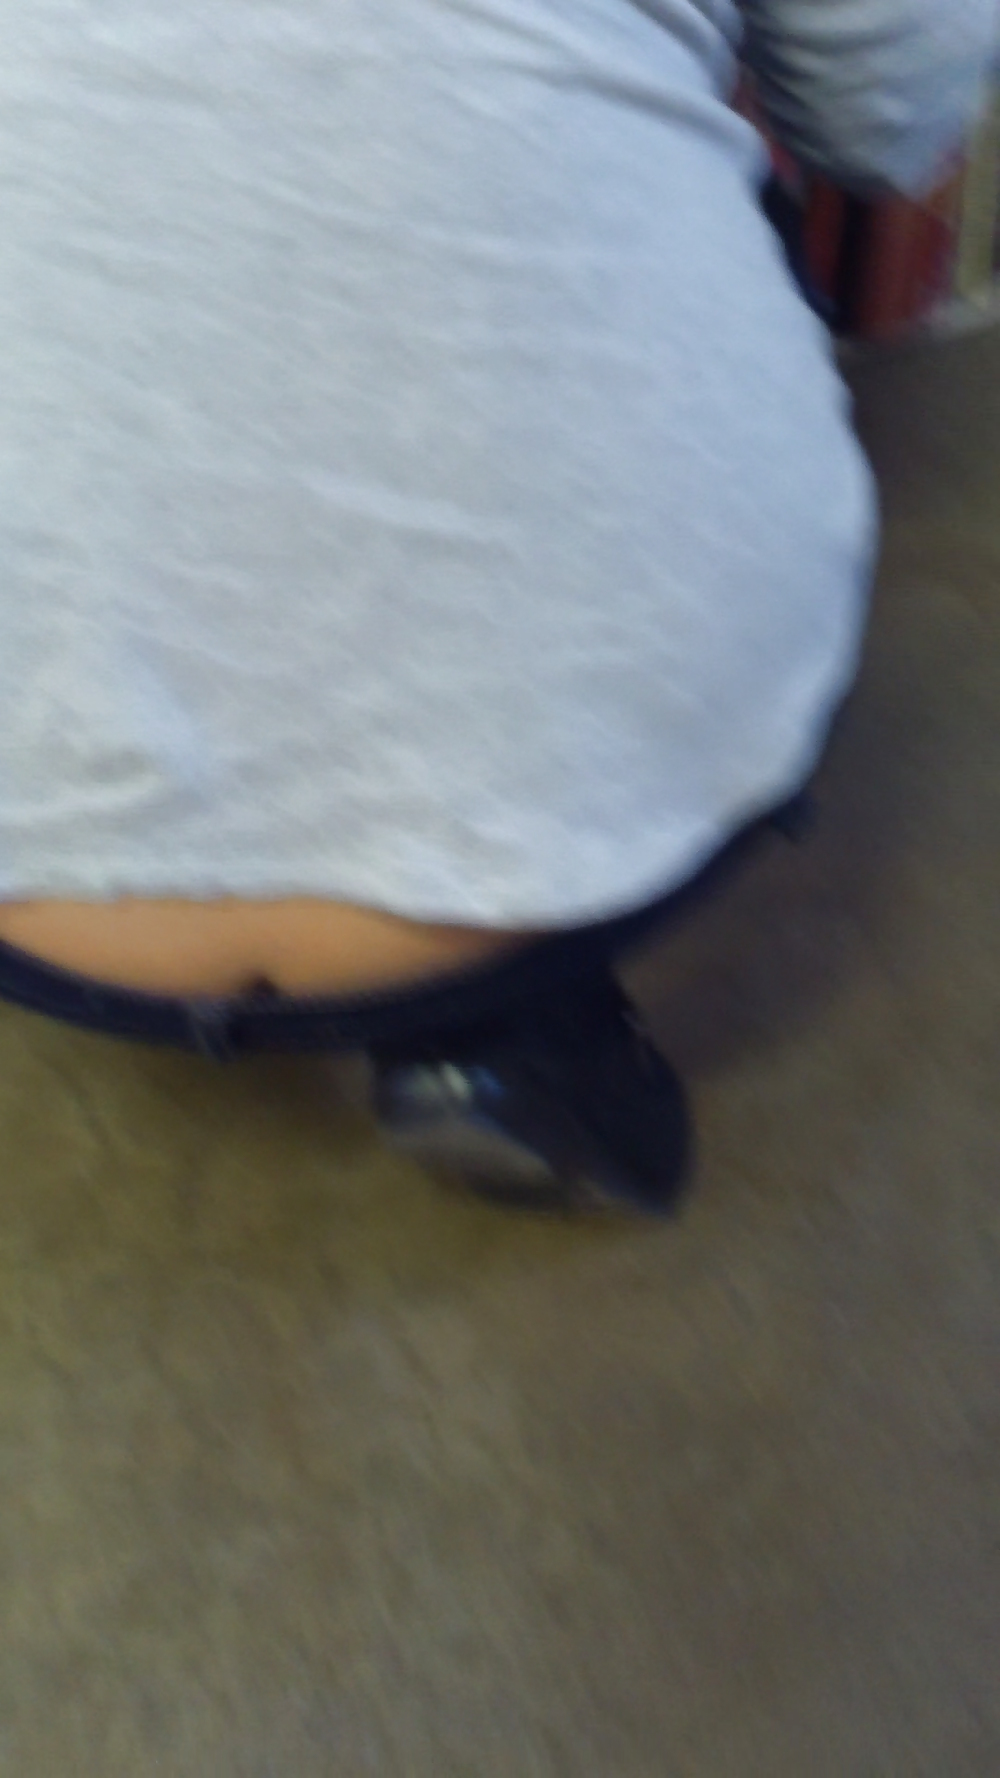 Popular teen girls butts & ass in jeans #21498461